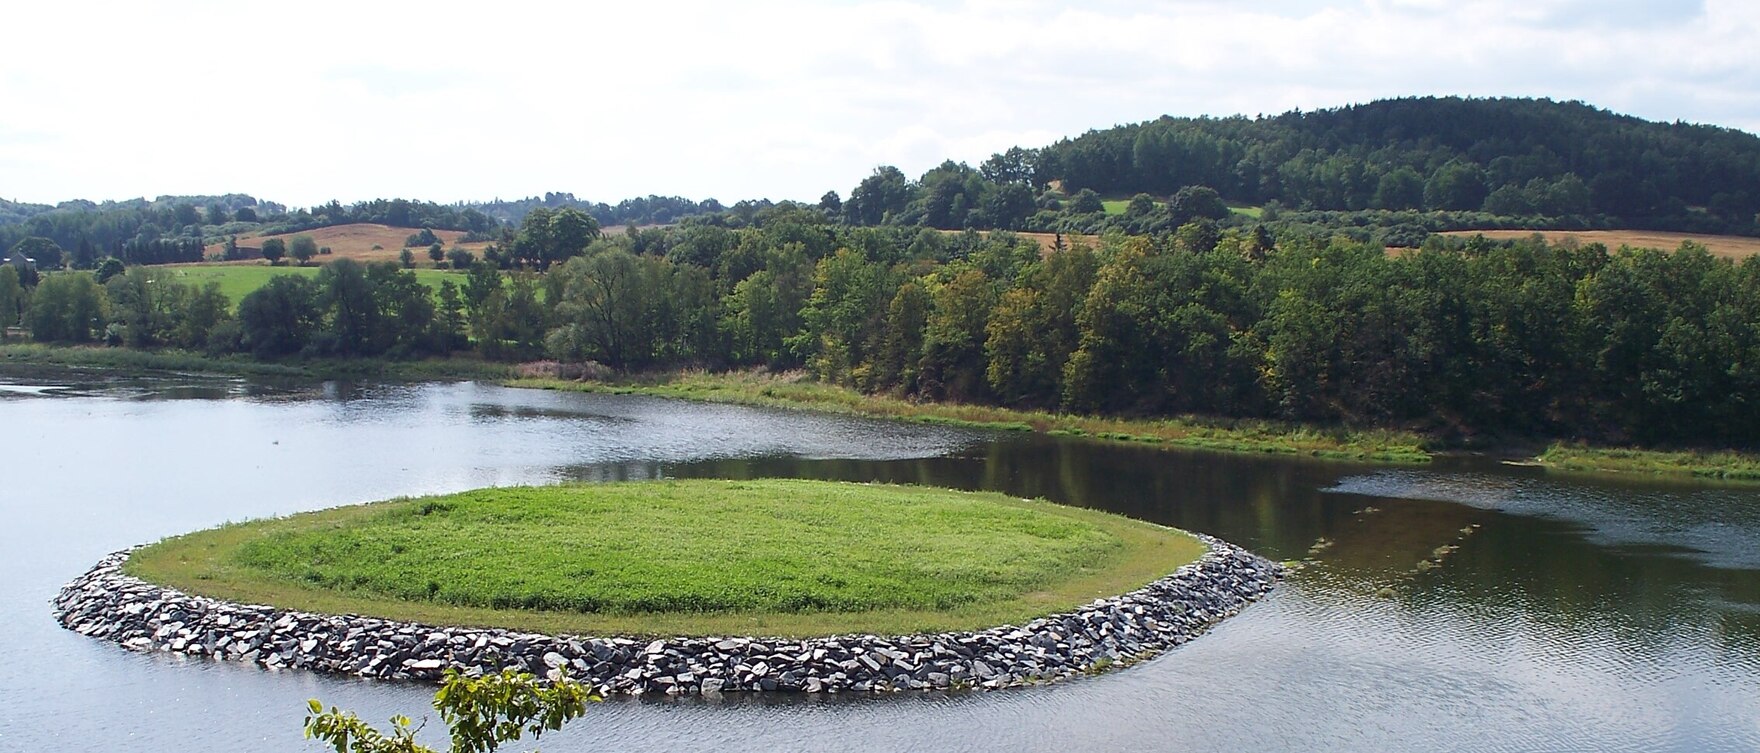 Blick auf einen See mit einer runden Wiese in der Mitte, die von Steinen begrenzt ist. Im Hintergrund Wald.